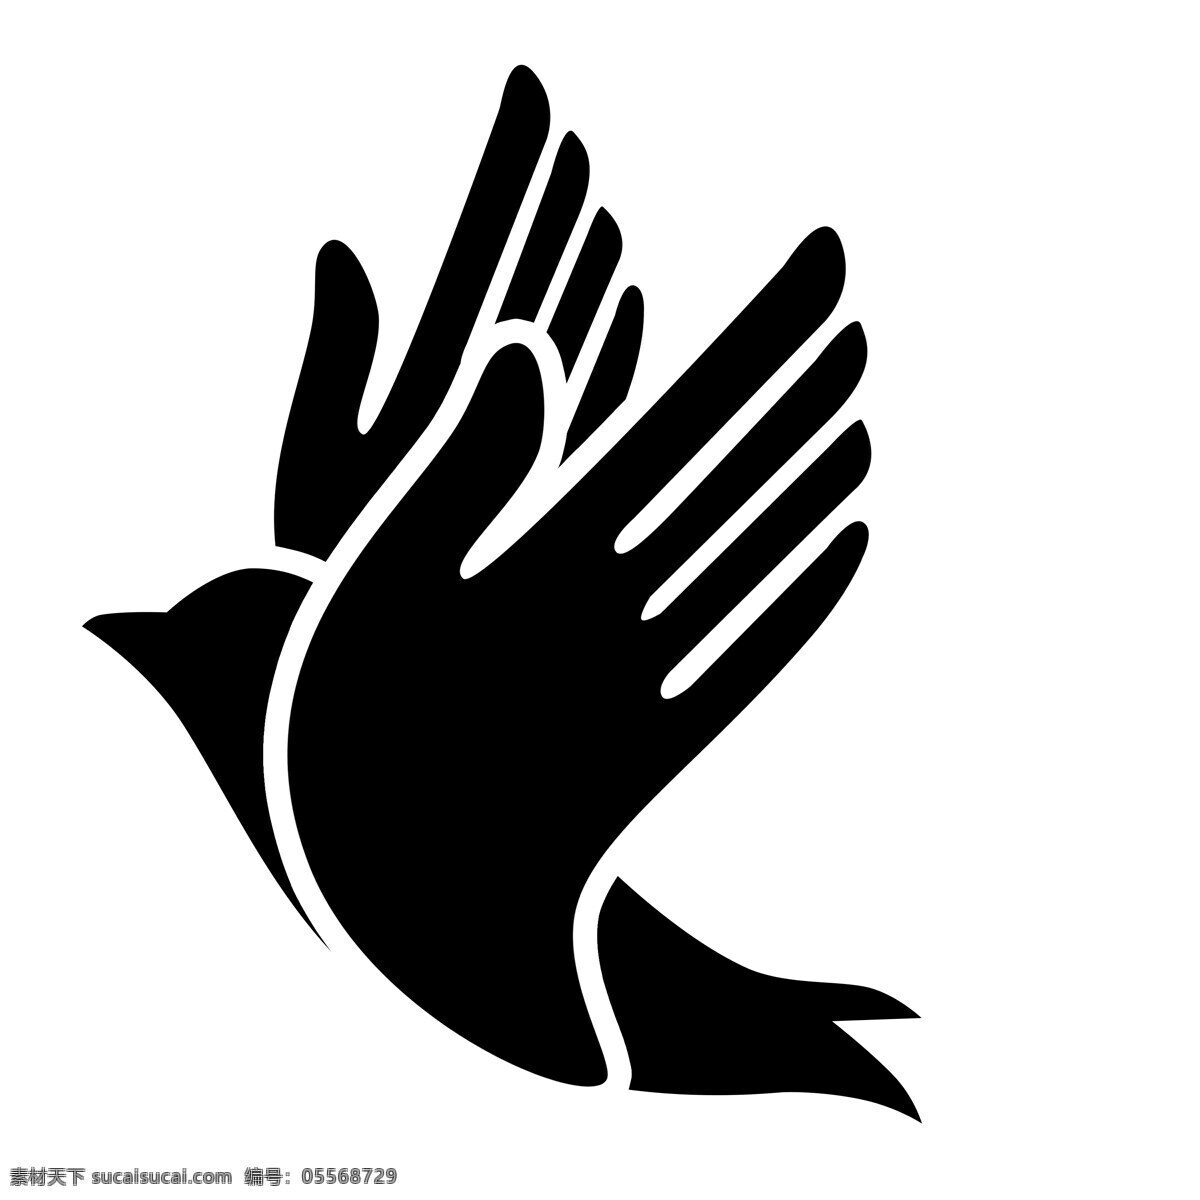 和平鸽 logo图片 鸽子 白鸽 logo 剪影 标志图标 企业 标志